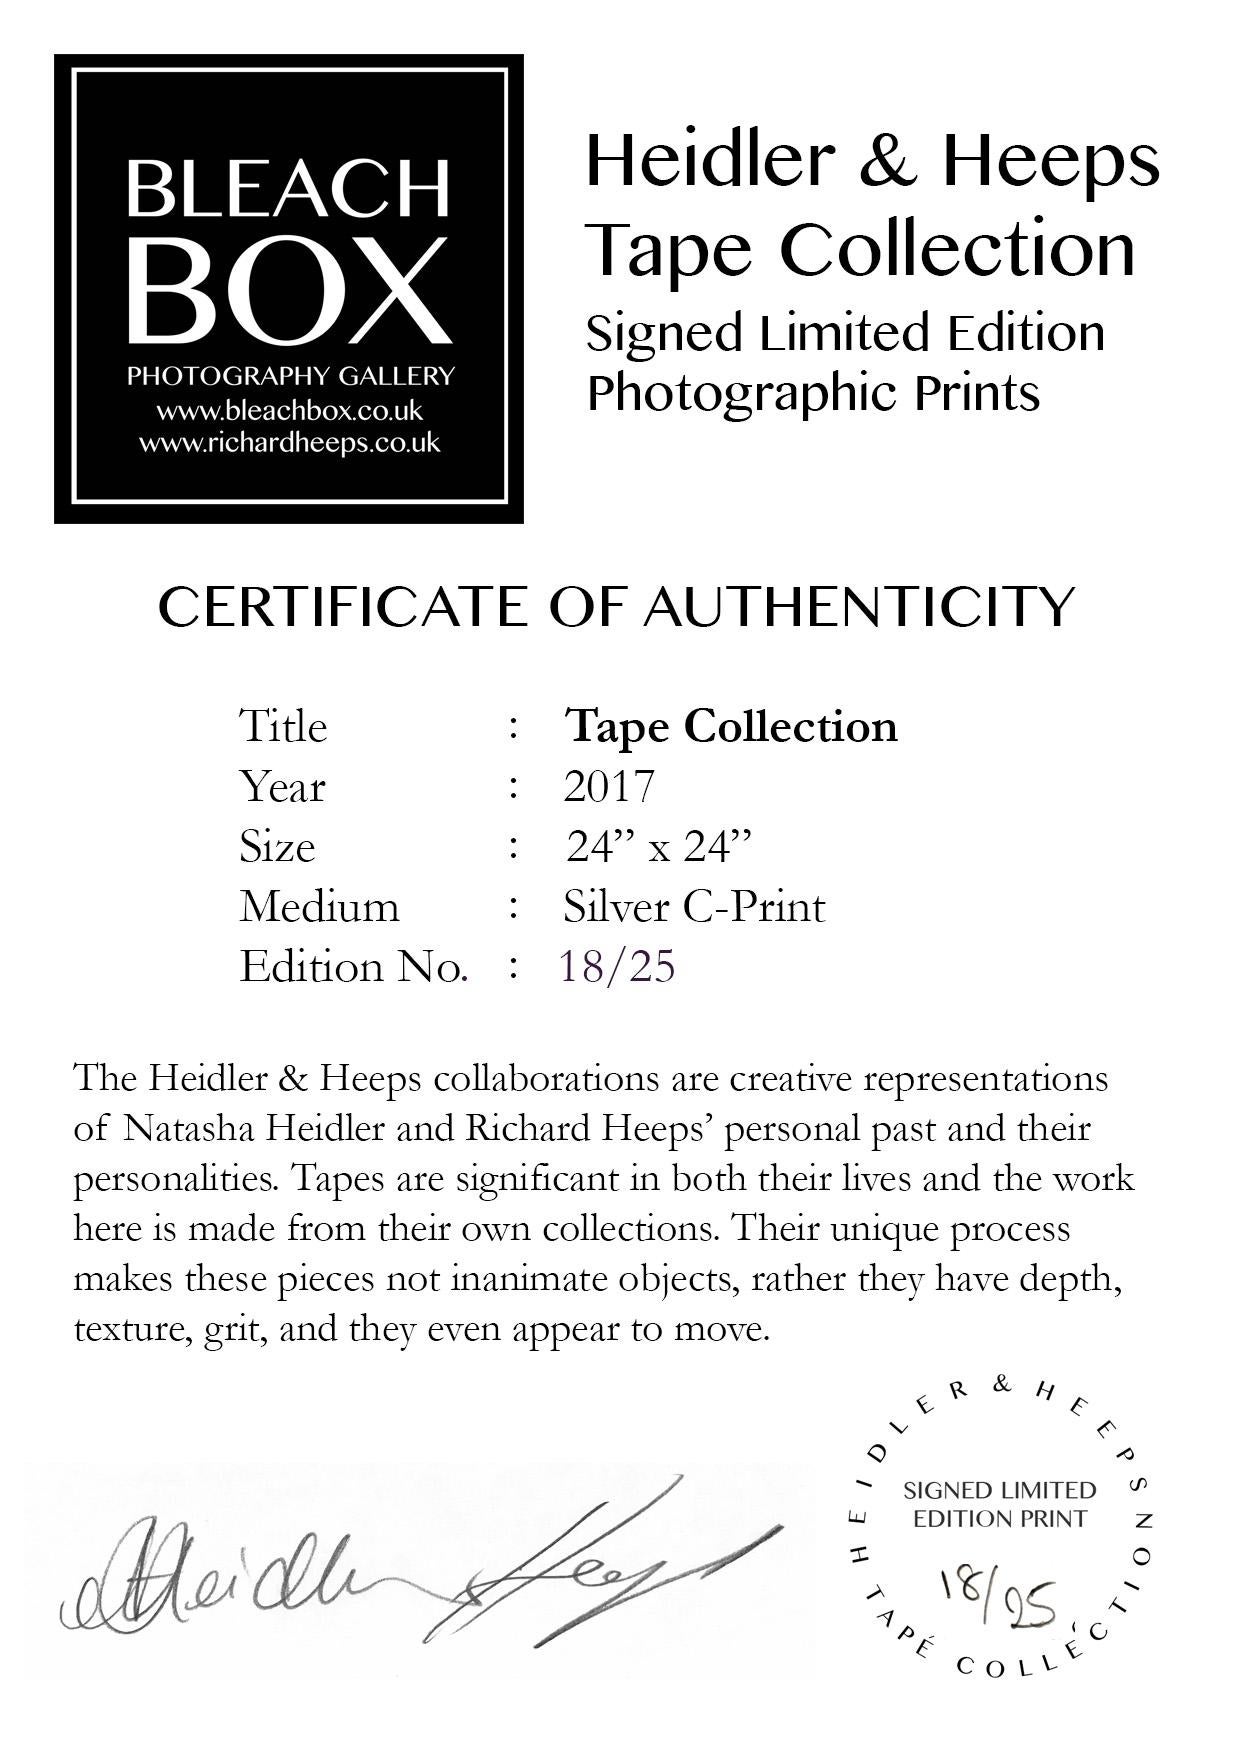 Heidler & Heeps Tape Collection.
Die Kollaborationen von Heidler & Heeps sind kreative Repräsentationen von Natasha Heidler und Richard Heeps' persönlicher Vergangenheit und ihrer Persönlichkeiten. Tonbänder spielen in ihrem Leben eine wichtige